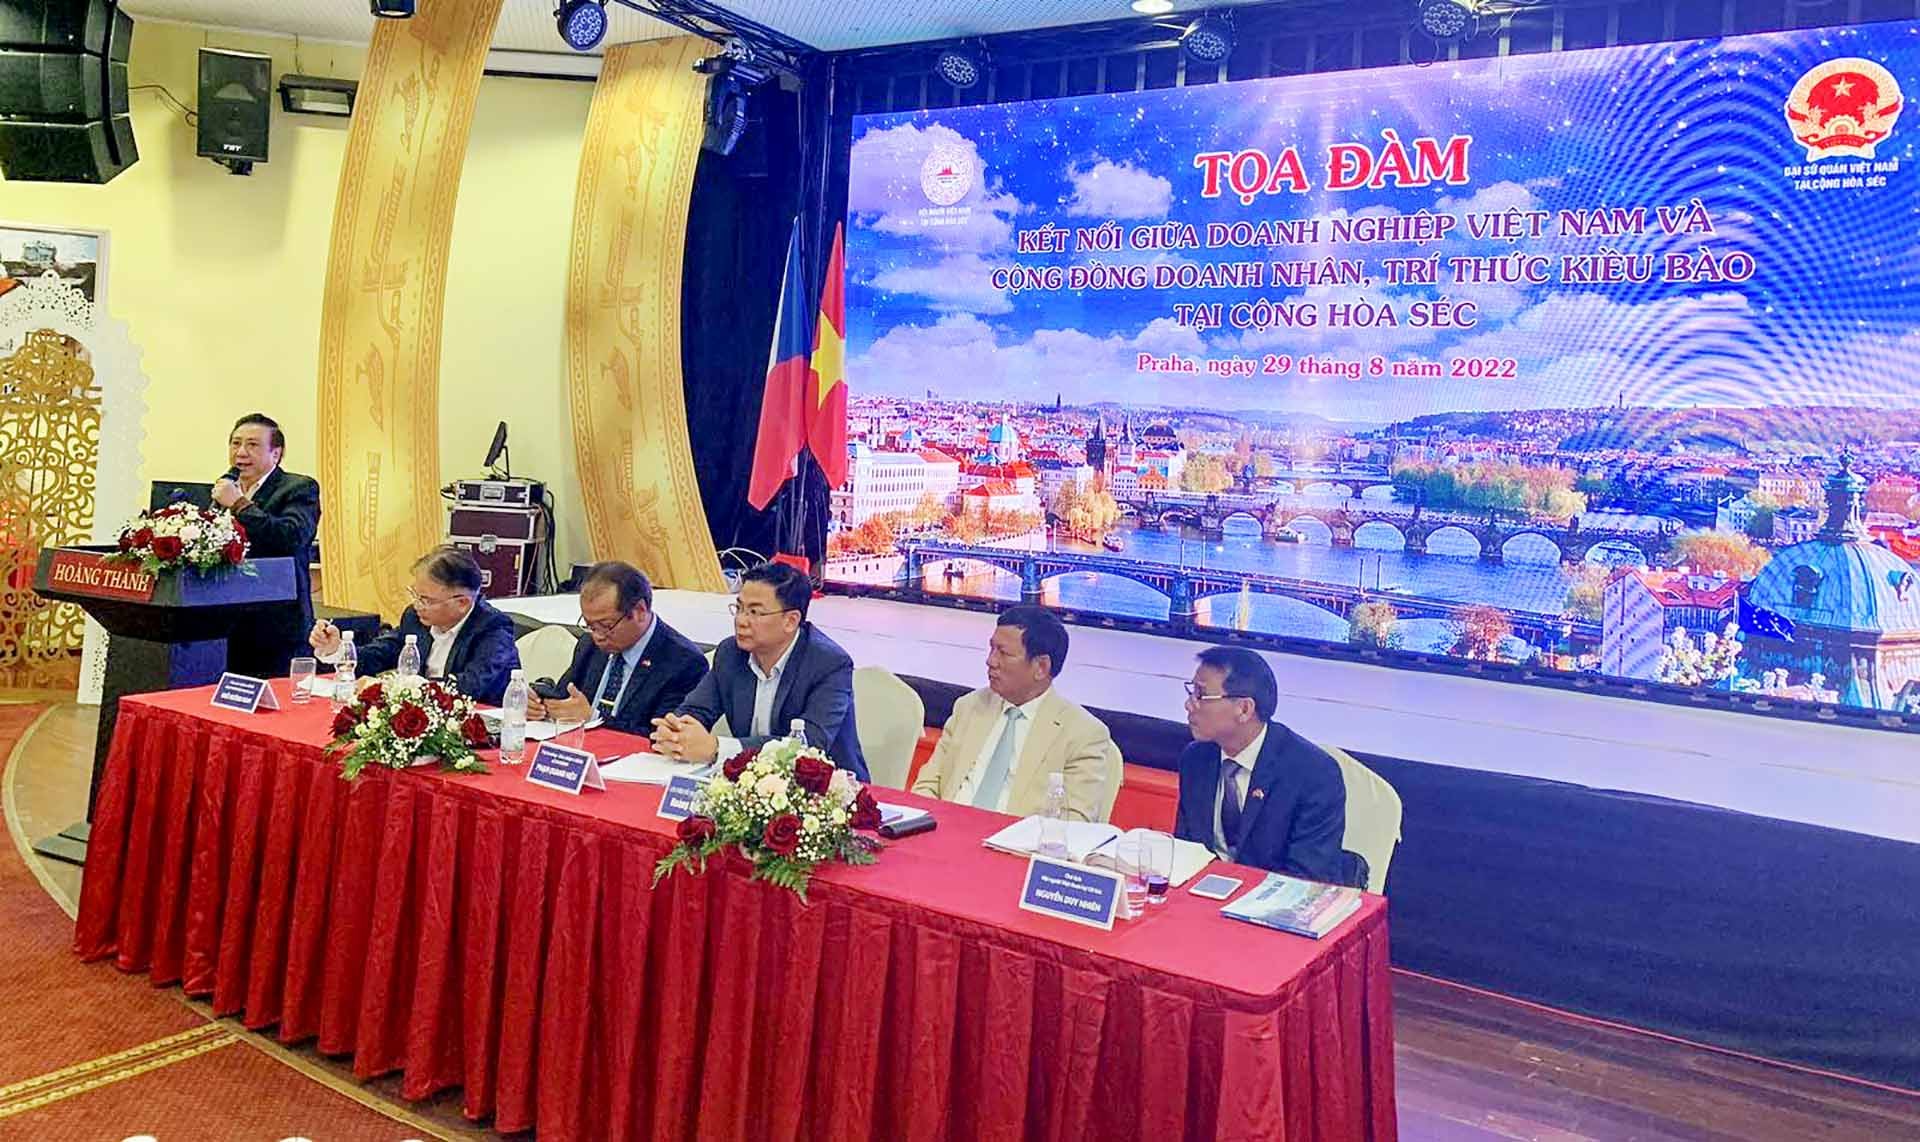 Thứ trưởng Phạm Quang Hiệu dự Tọa đàm kết nối giữa doanh nghiệp Việt Nam và cộng đồng doanh nhân, trí thức kiều bào tại Cộng hòa Czech.